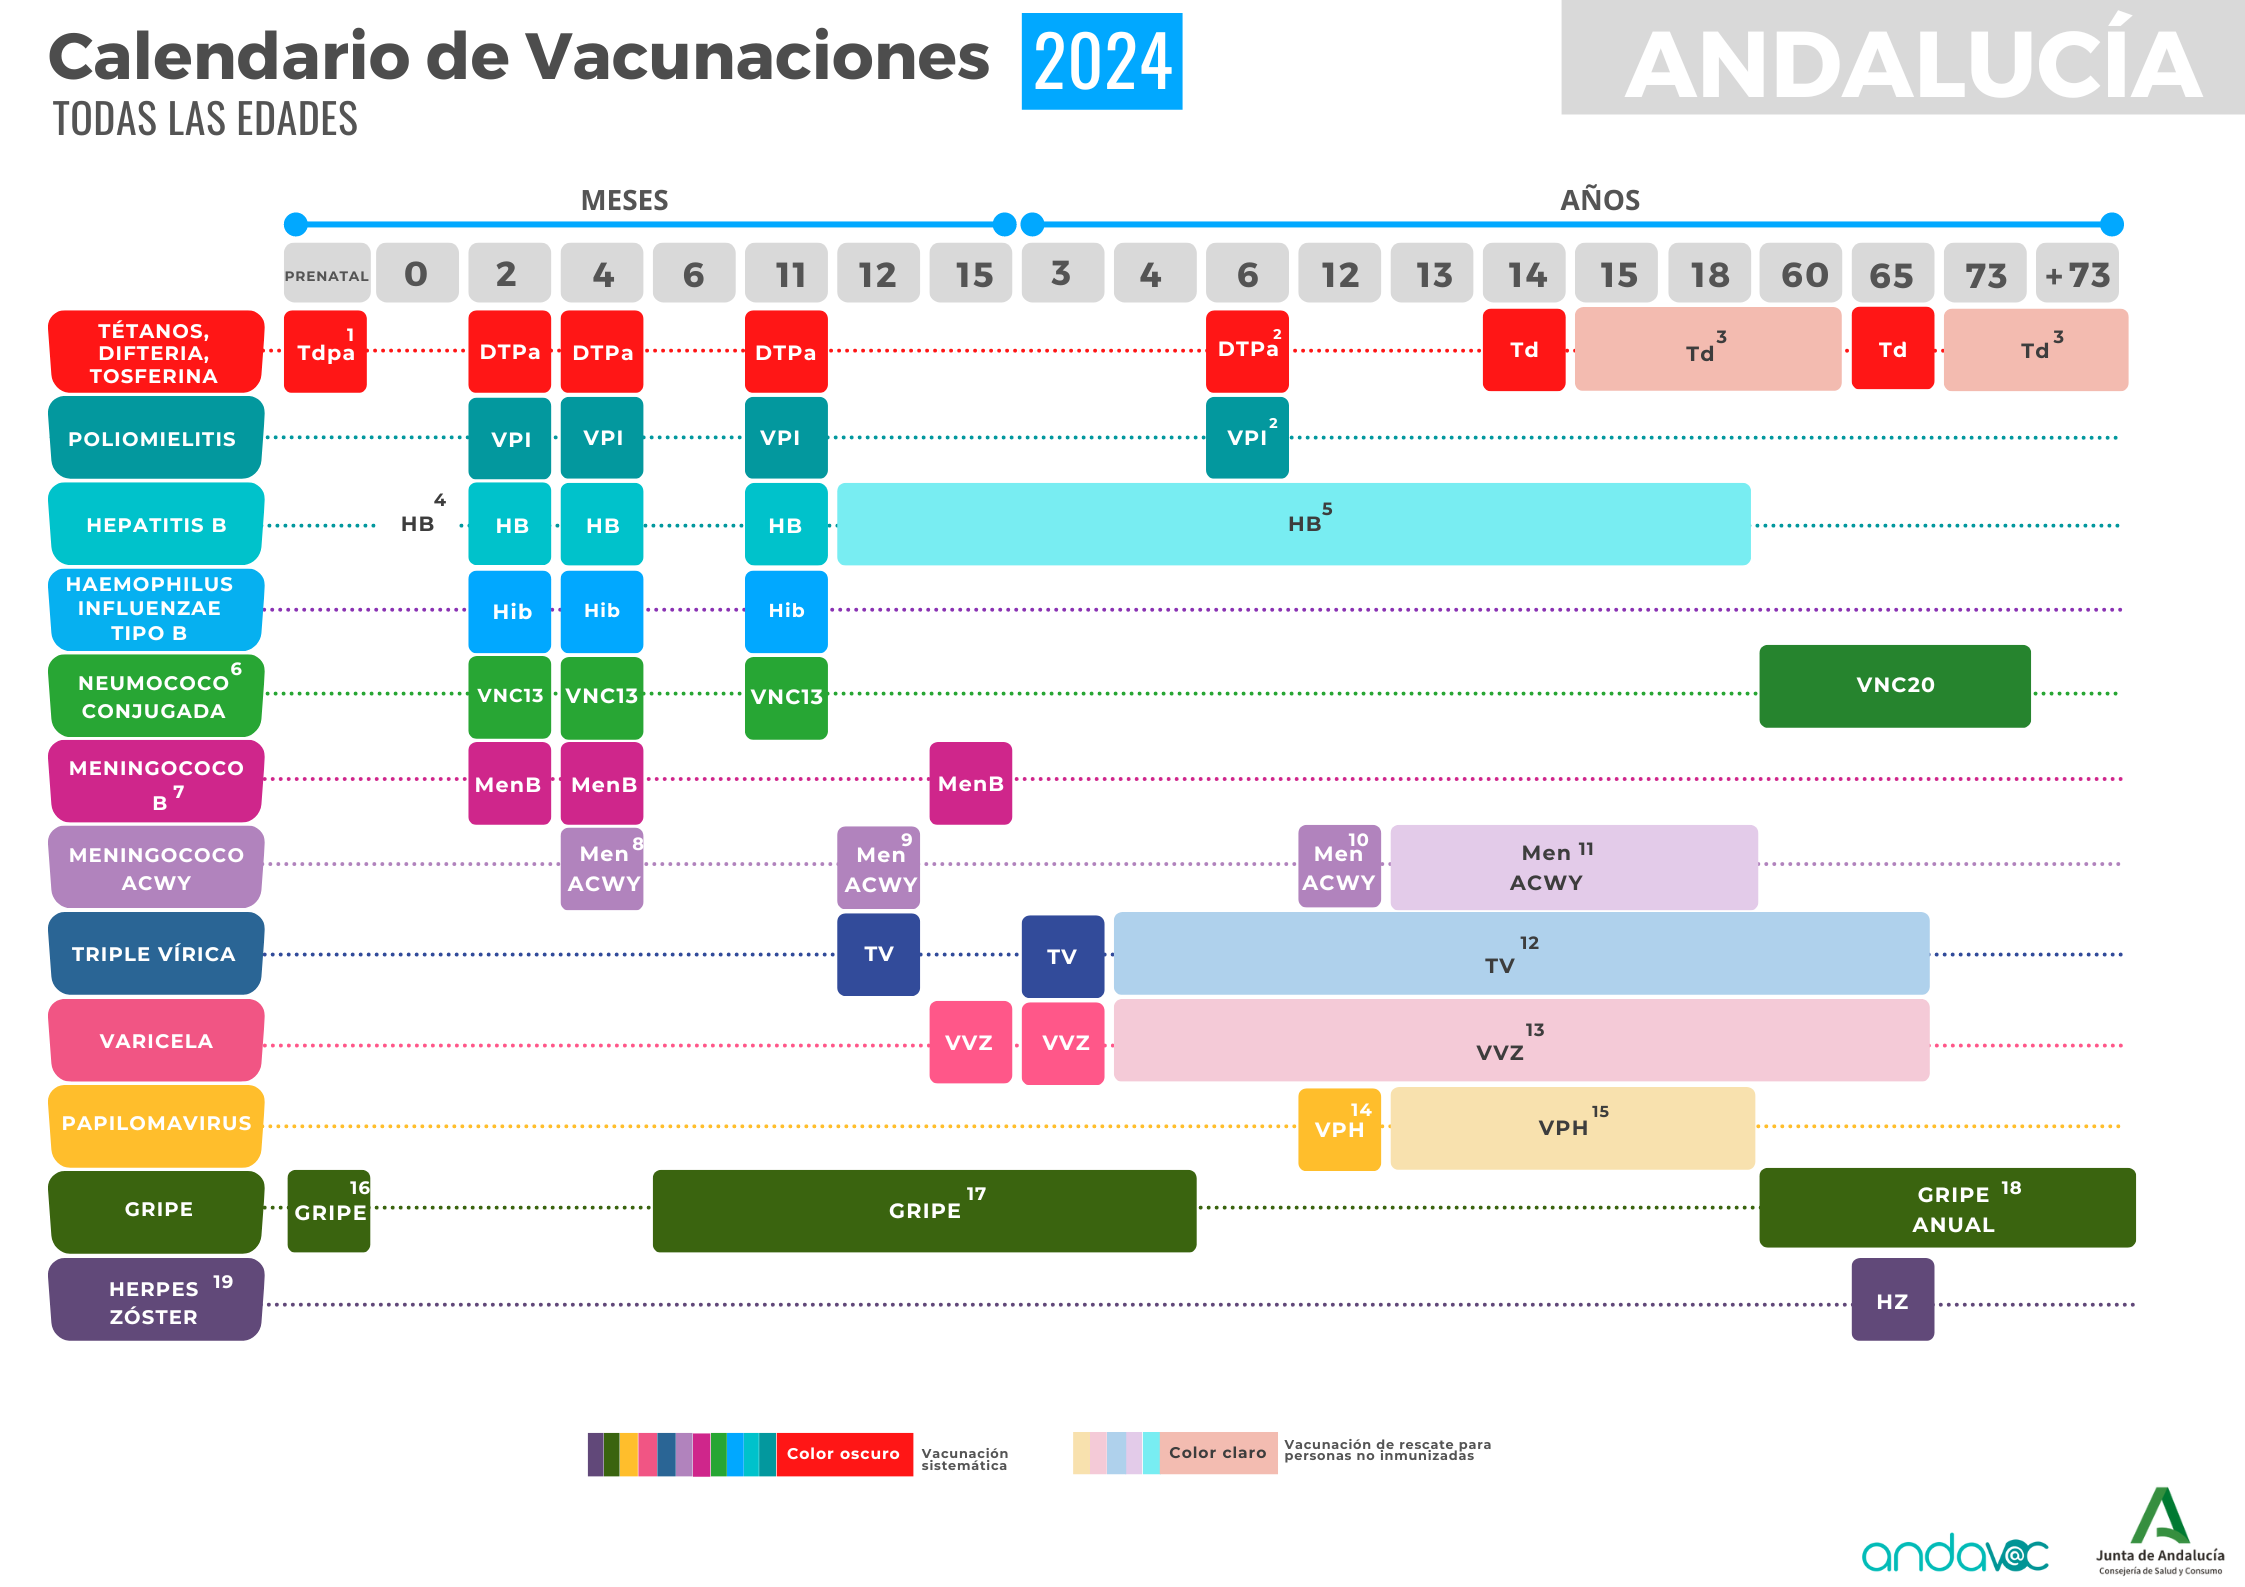 Calendario de Vacunaciones 2024 para Andalucía